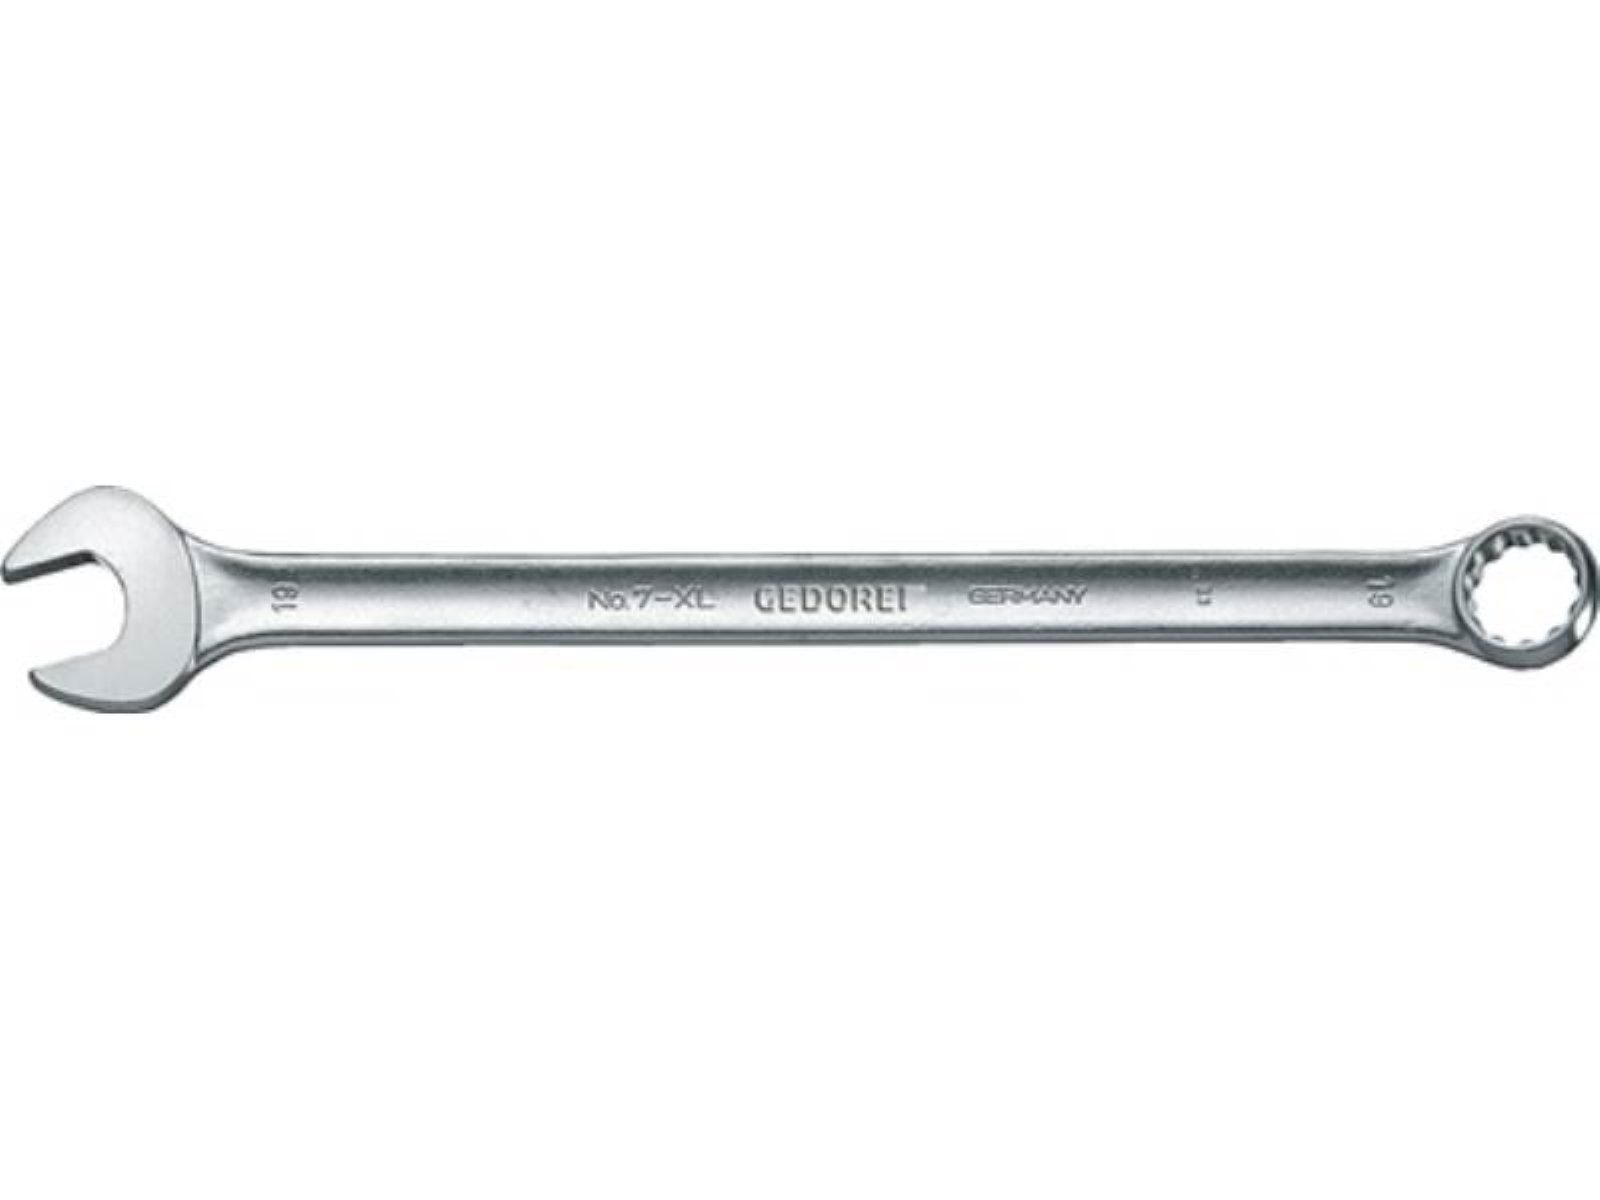 Gedore SW Maulschlüssel 7 ext.lang Ringmaulschlüssel CV-Stahl XL 11mm A GEDOR L.200mm Form